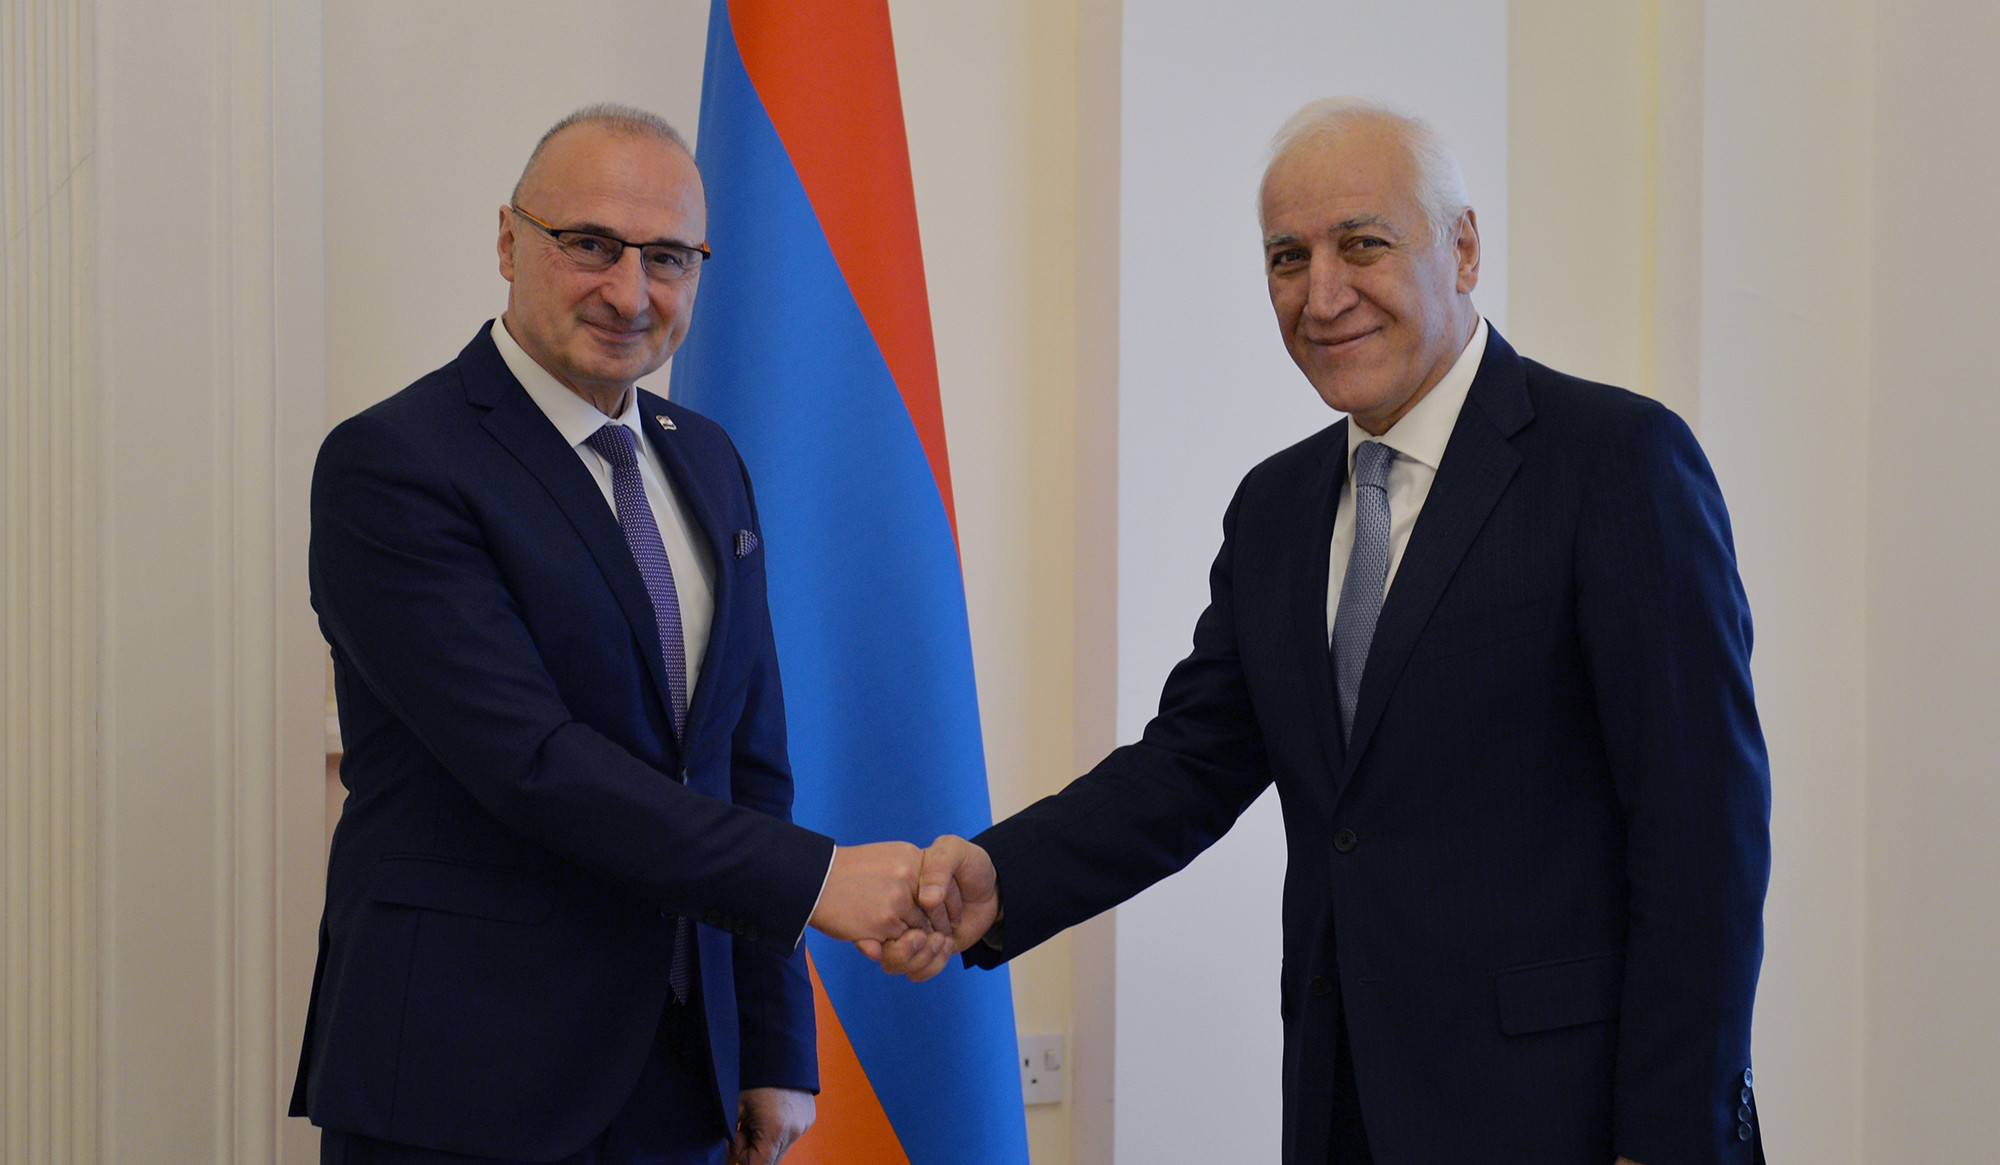 Հանրապետության նախագահը և Խորվաթիայի ԱԳ նախարարն անդրադարձել են փոխշահավետ համագործակցության հնարավորություններին